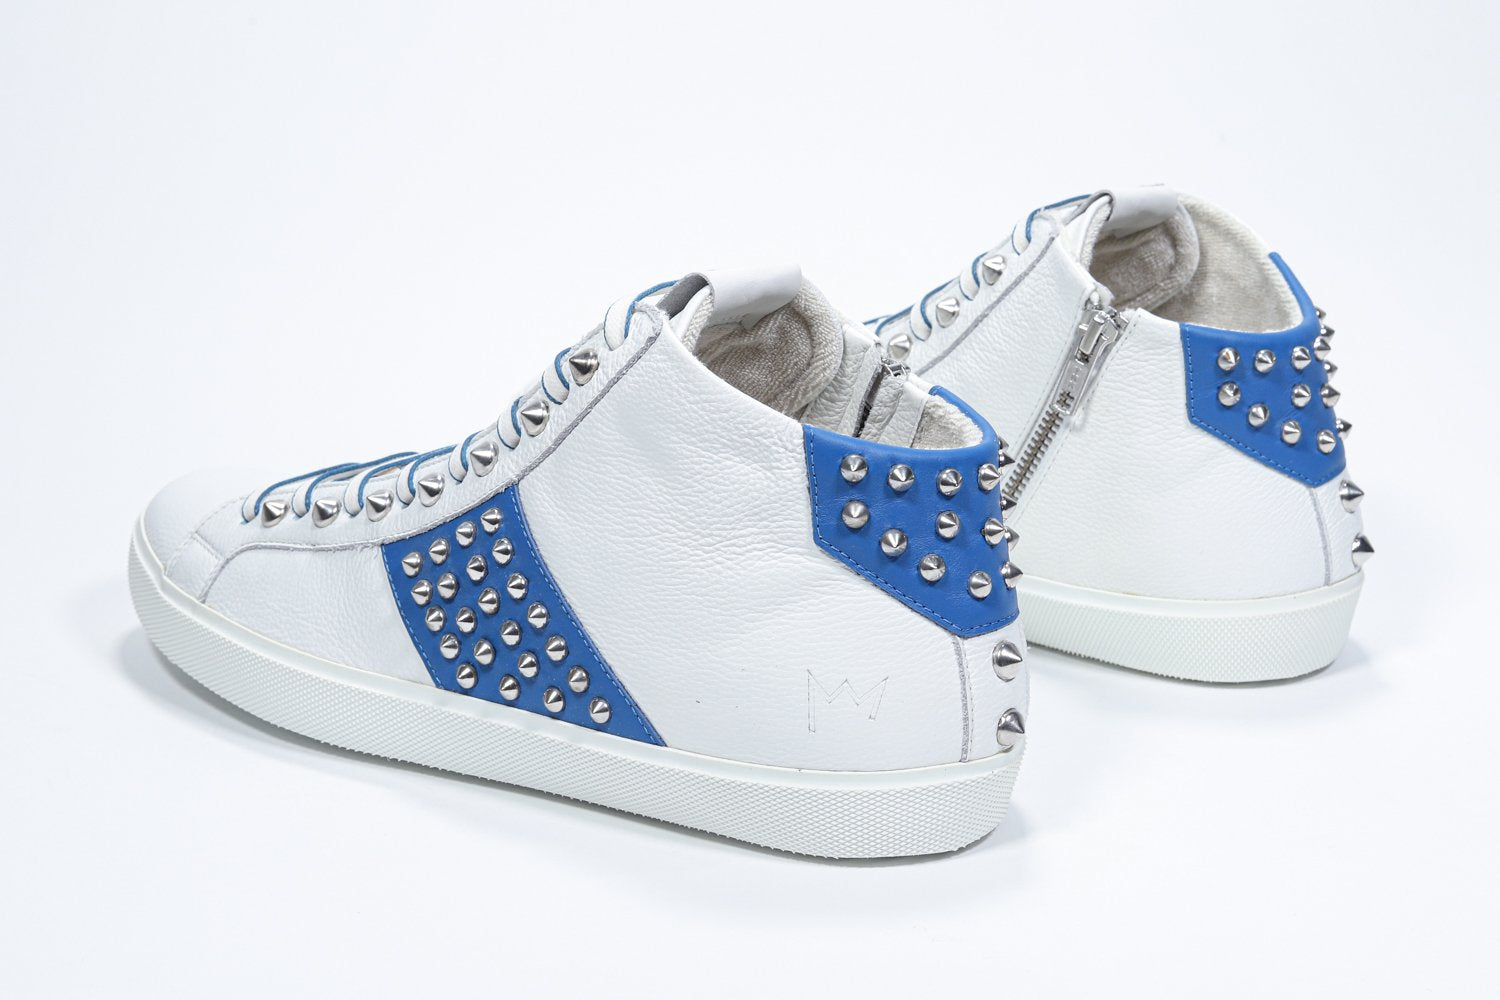 Vista posteriore a tre quarti del mid top bianco e blu reale sneaker. Tomaia in pelle con borchie, zip interna e suola in gomma bianca.